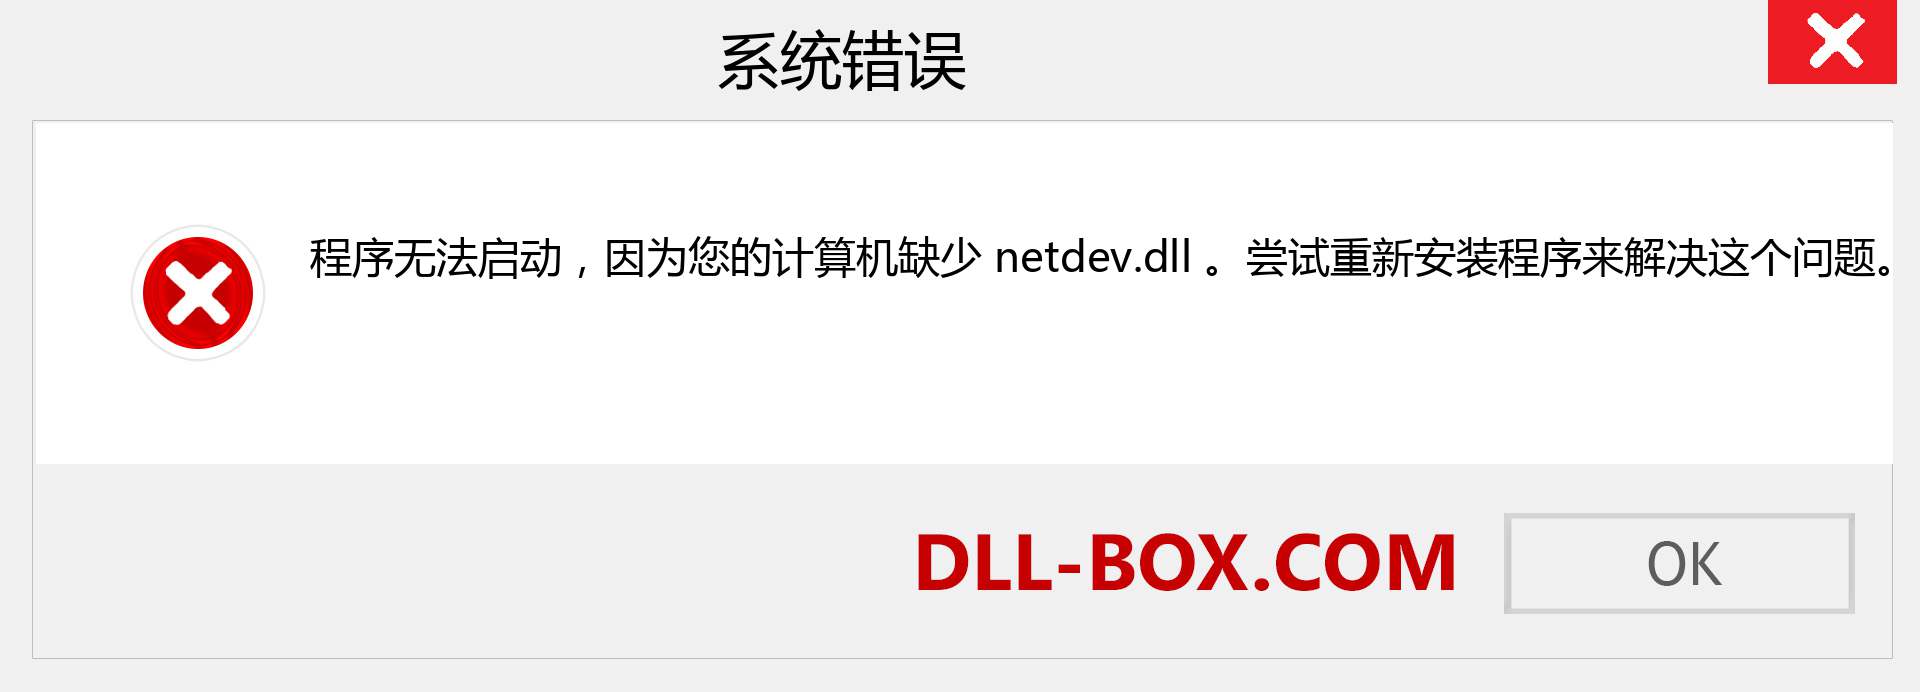 netdev.dll 文件丢失？。 适用于 Windows 7、8、10 的下载 - 修复 Windows、照片、图像上的 netdev dll 丢失错误